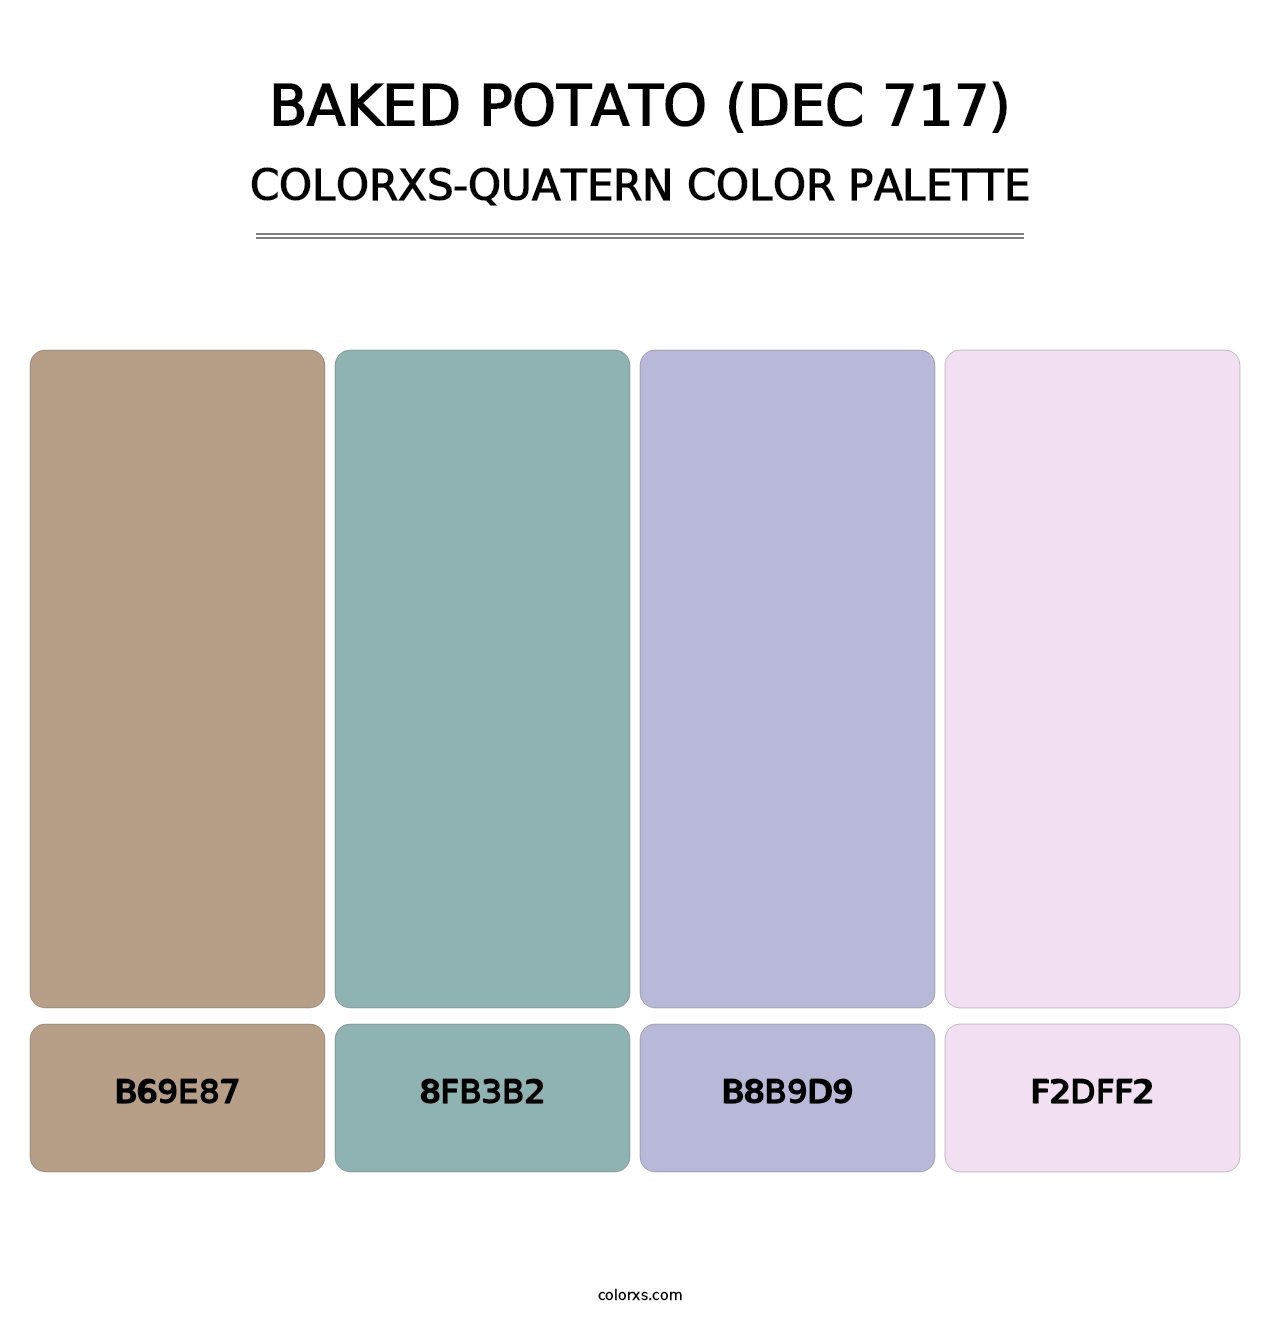 Baked Potato (DEC 717) - Colorxs Quatern Palette